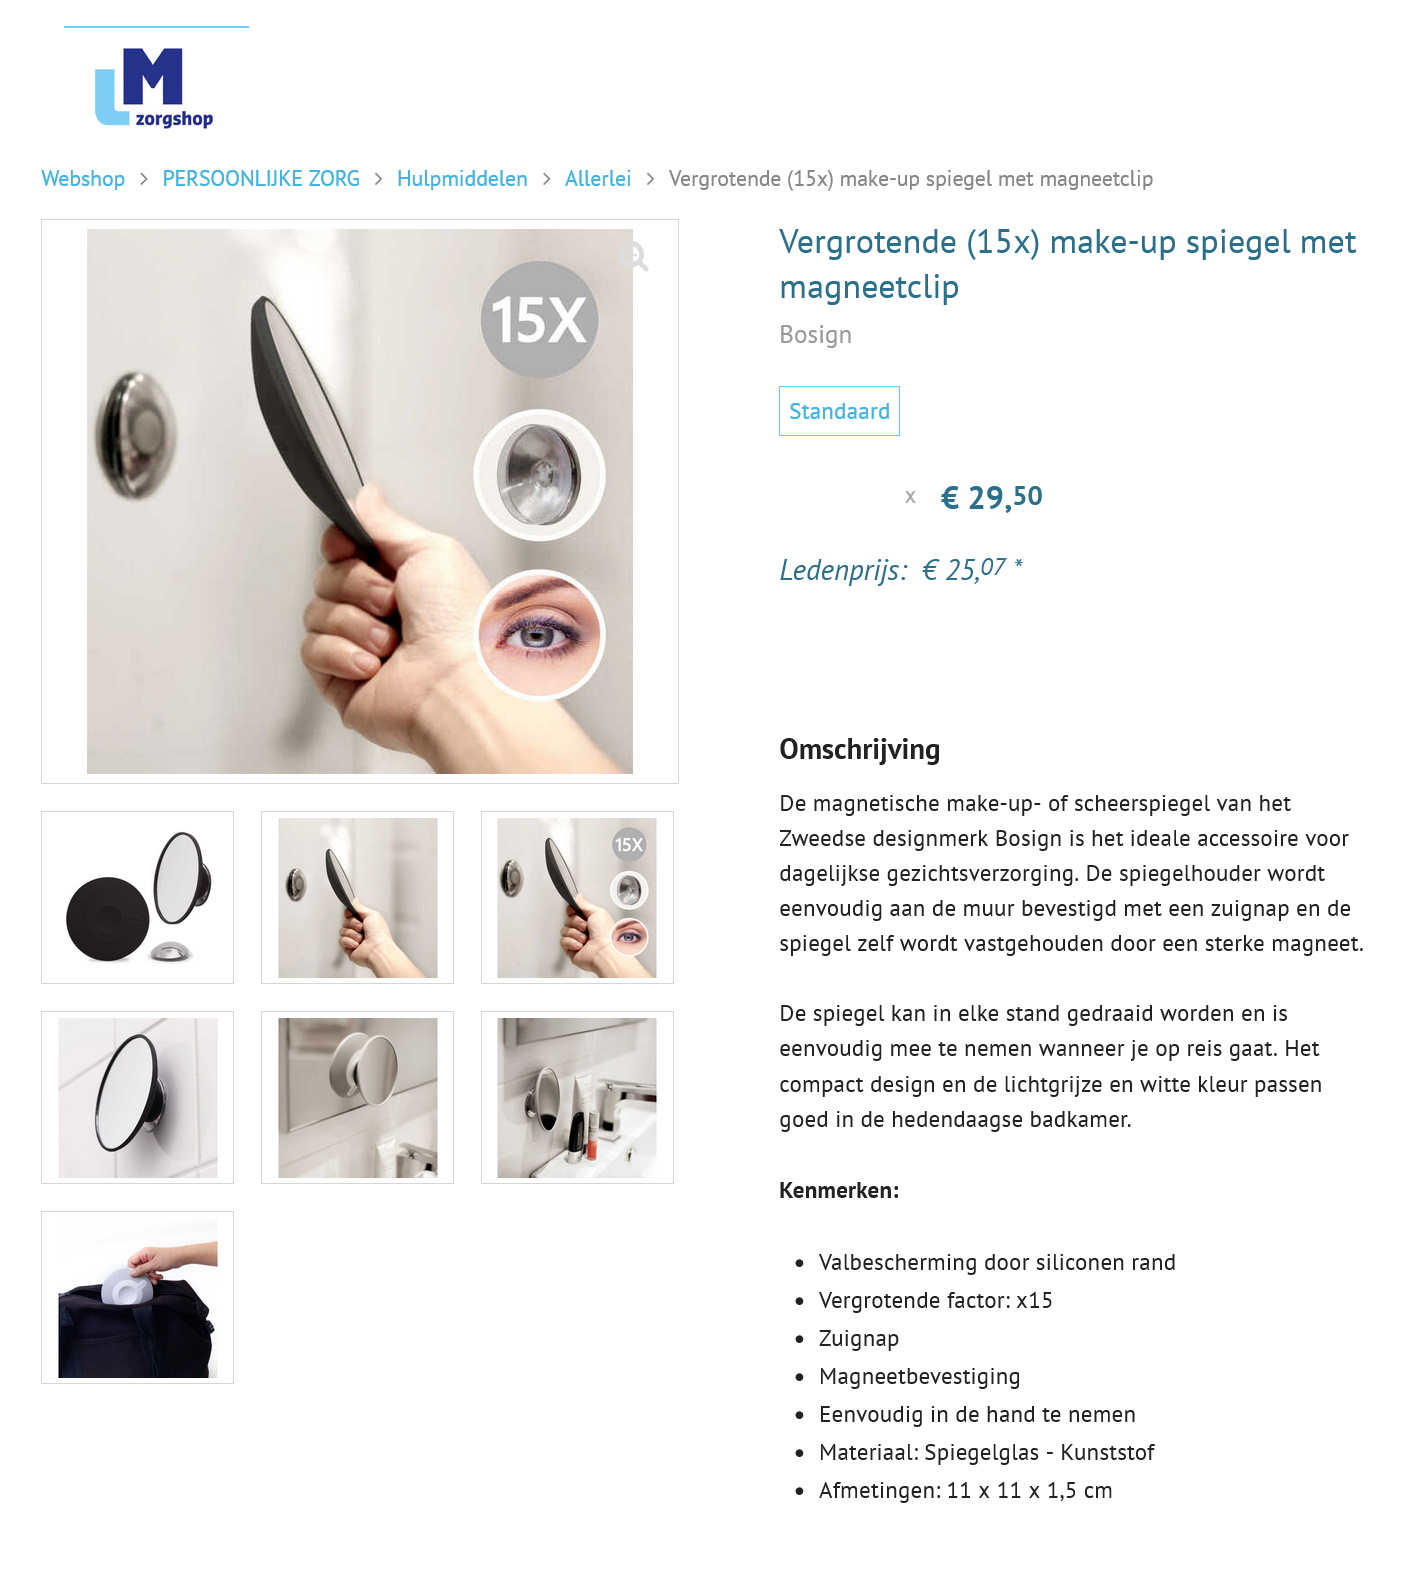 toegevoegd document 2 van Vergrotende (15x) make-up spiegel met magneetclip Bosign 